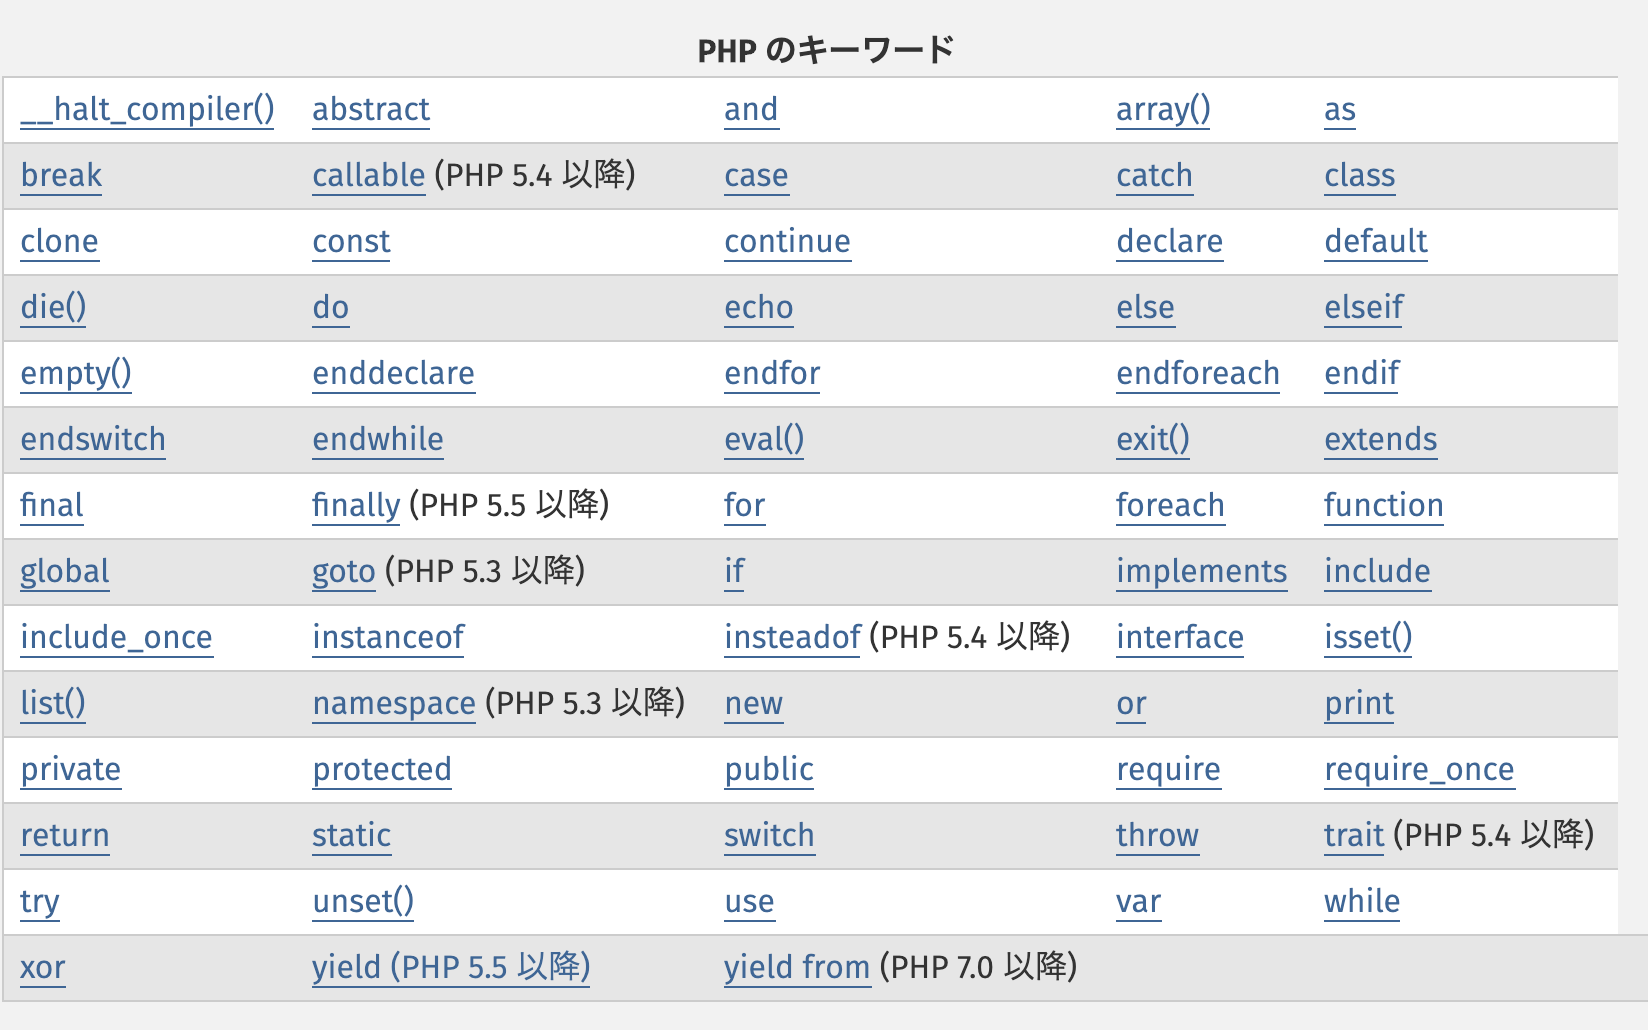 PHPマニュアルに載っているPHPのキーワード(予約語)のリスト